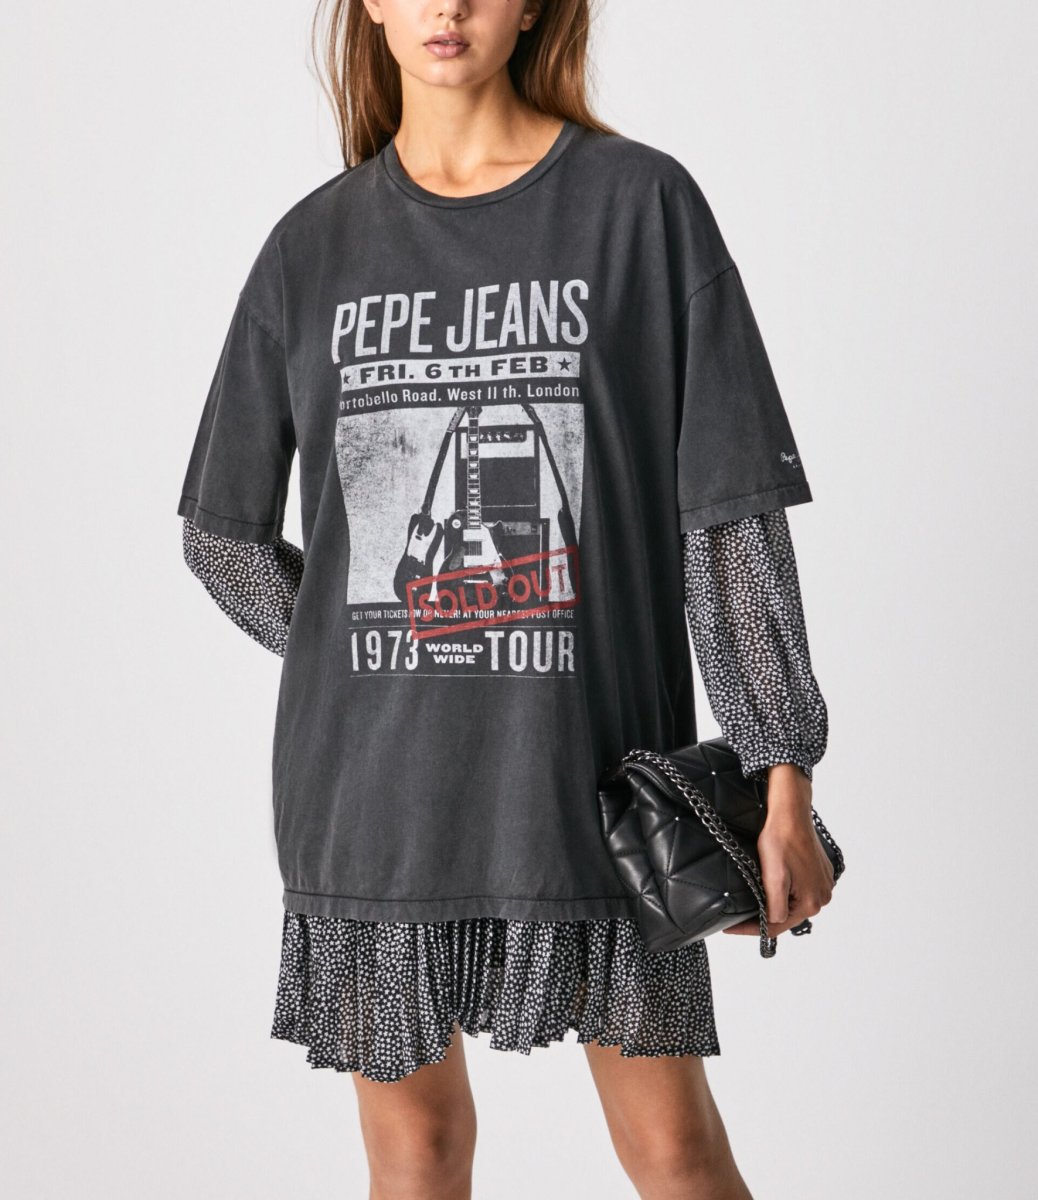 Pepe Jeans, DIANES ROCK GIG T-SHIRT, DLOUHE FOTO A LOGO TRIČKO, dámské